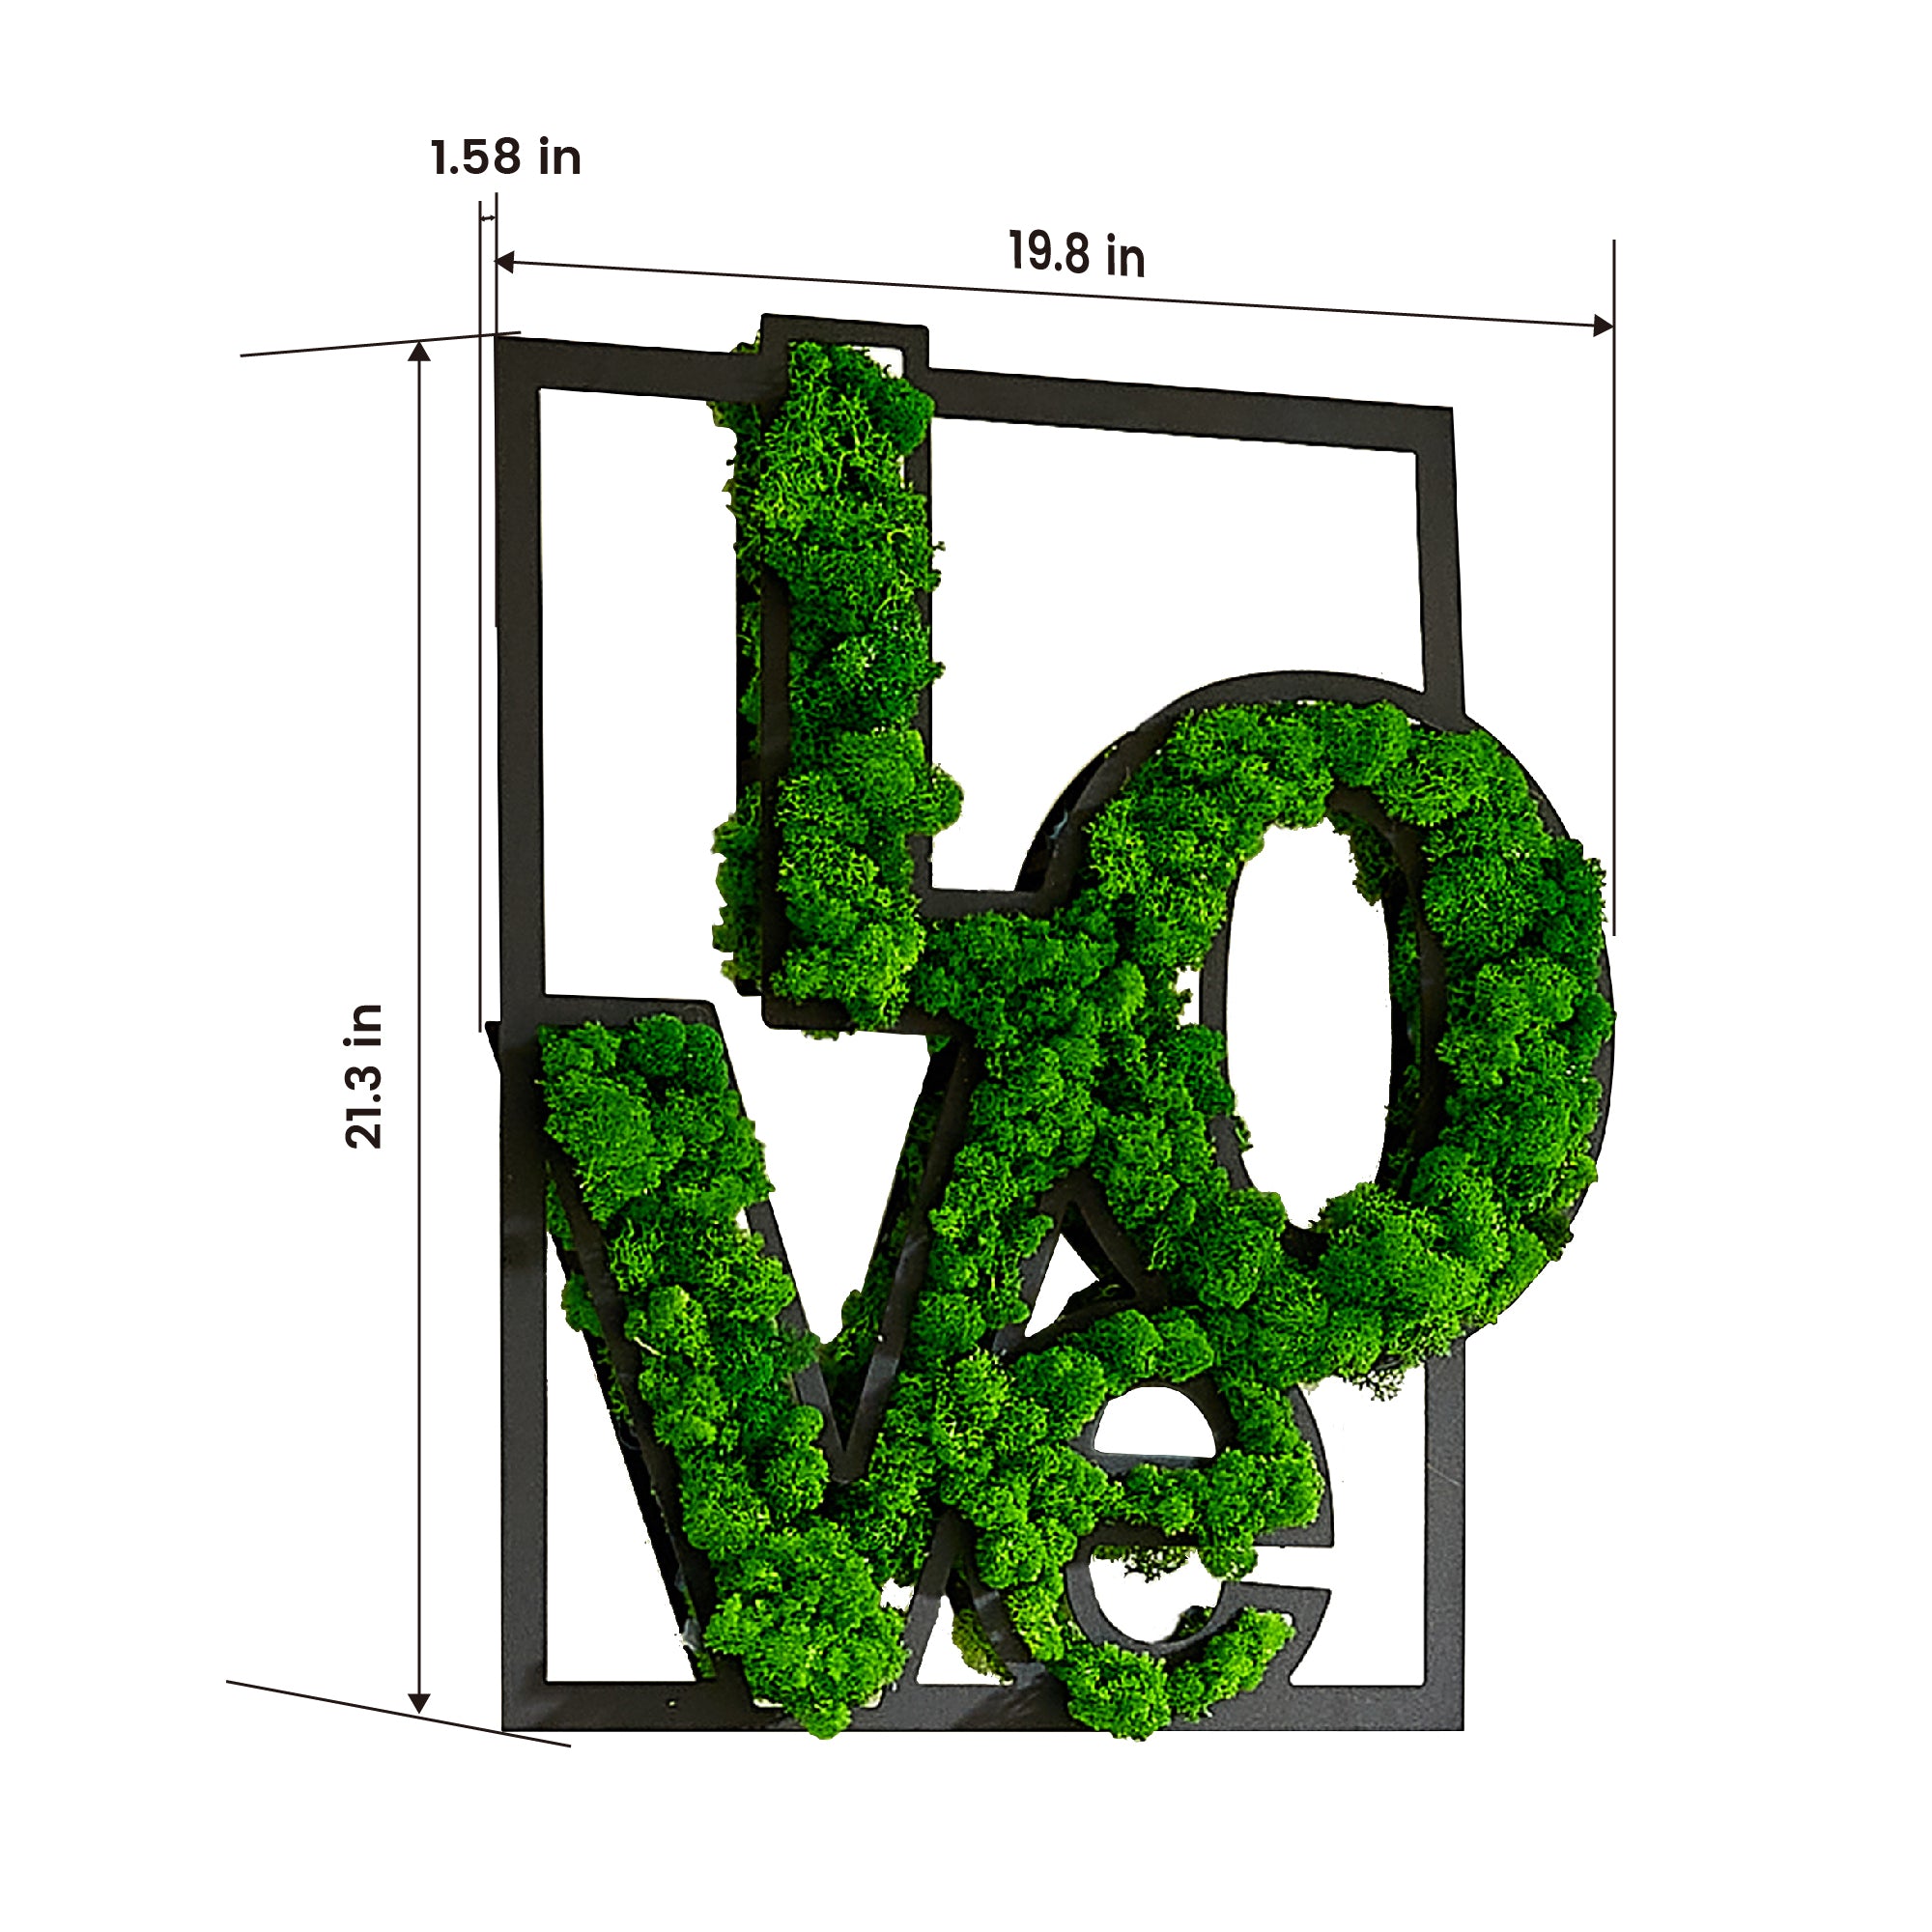 LOVE Moss Letter Metal Wall Art green-iron